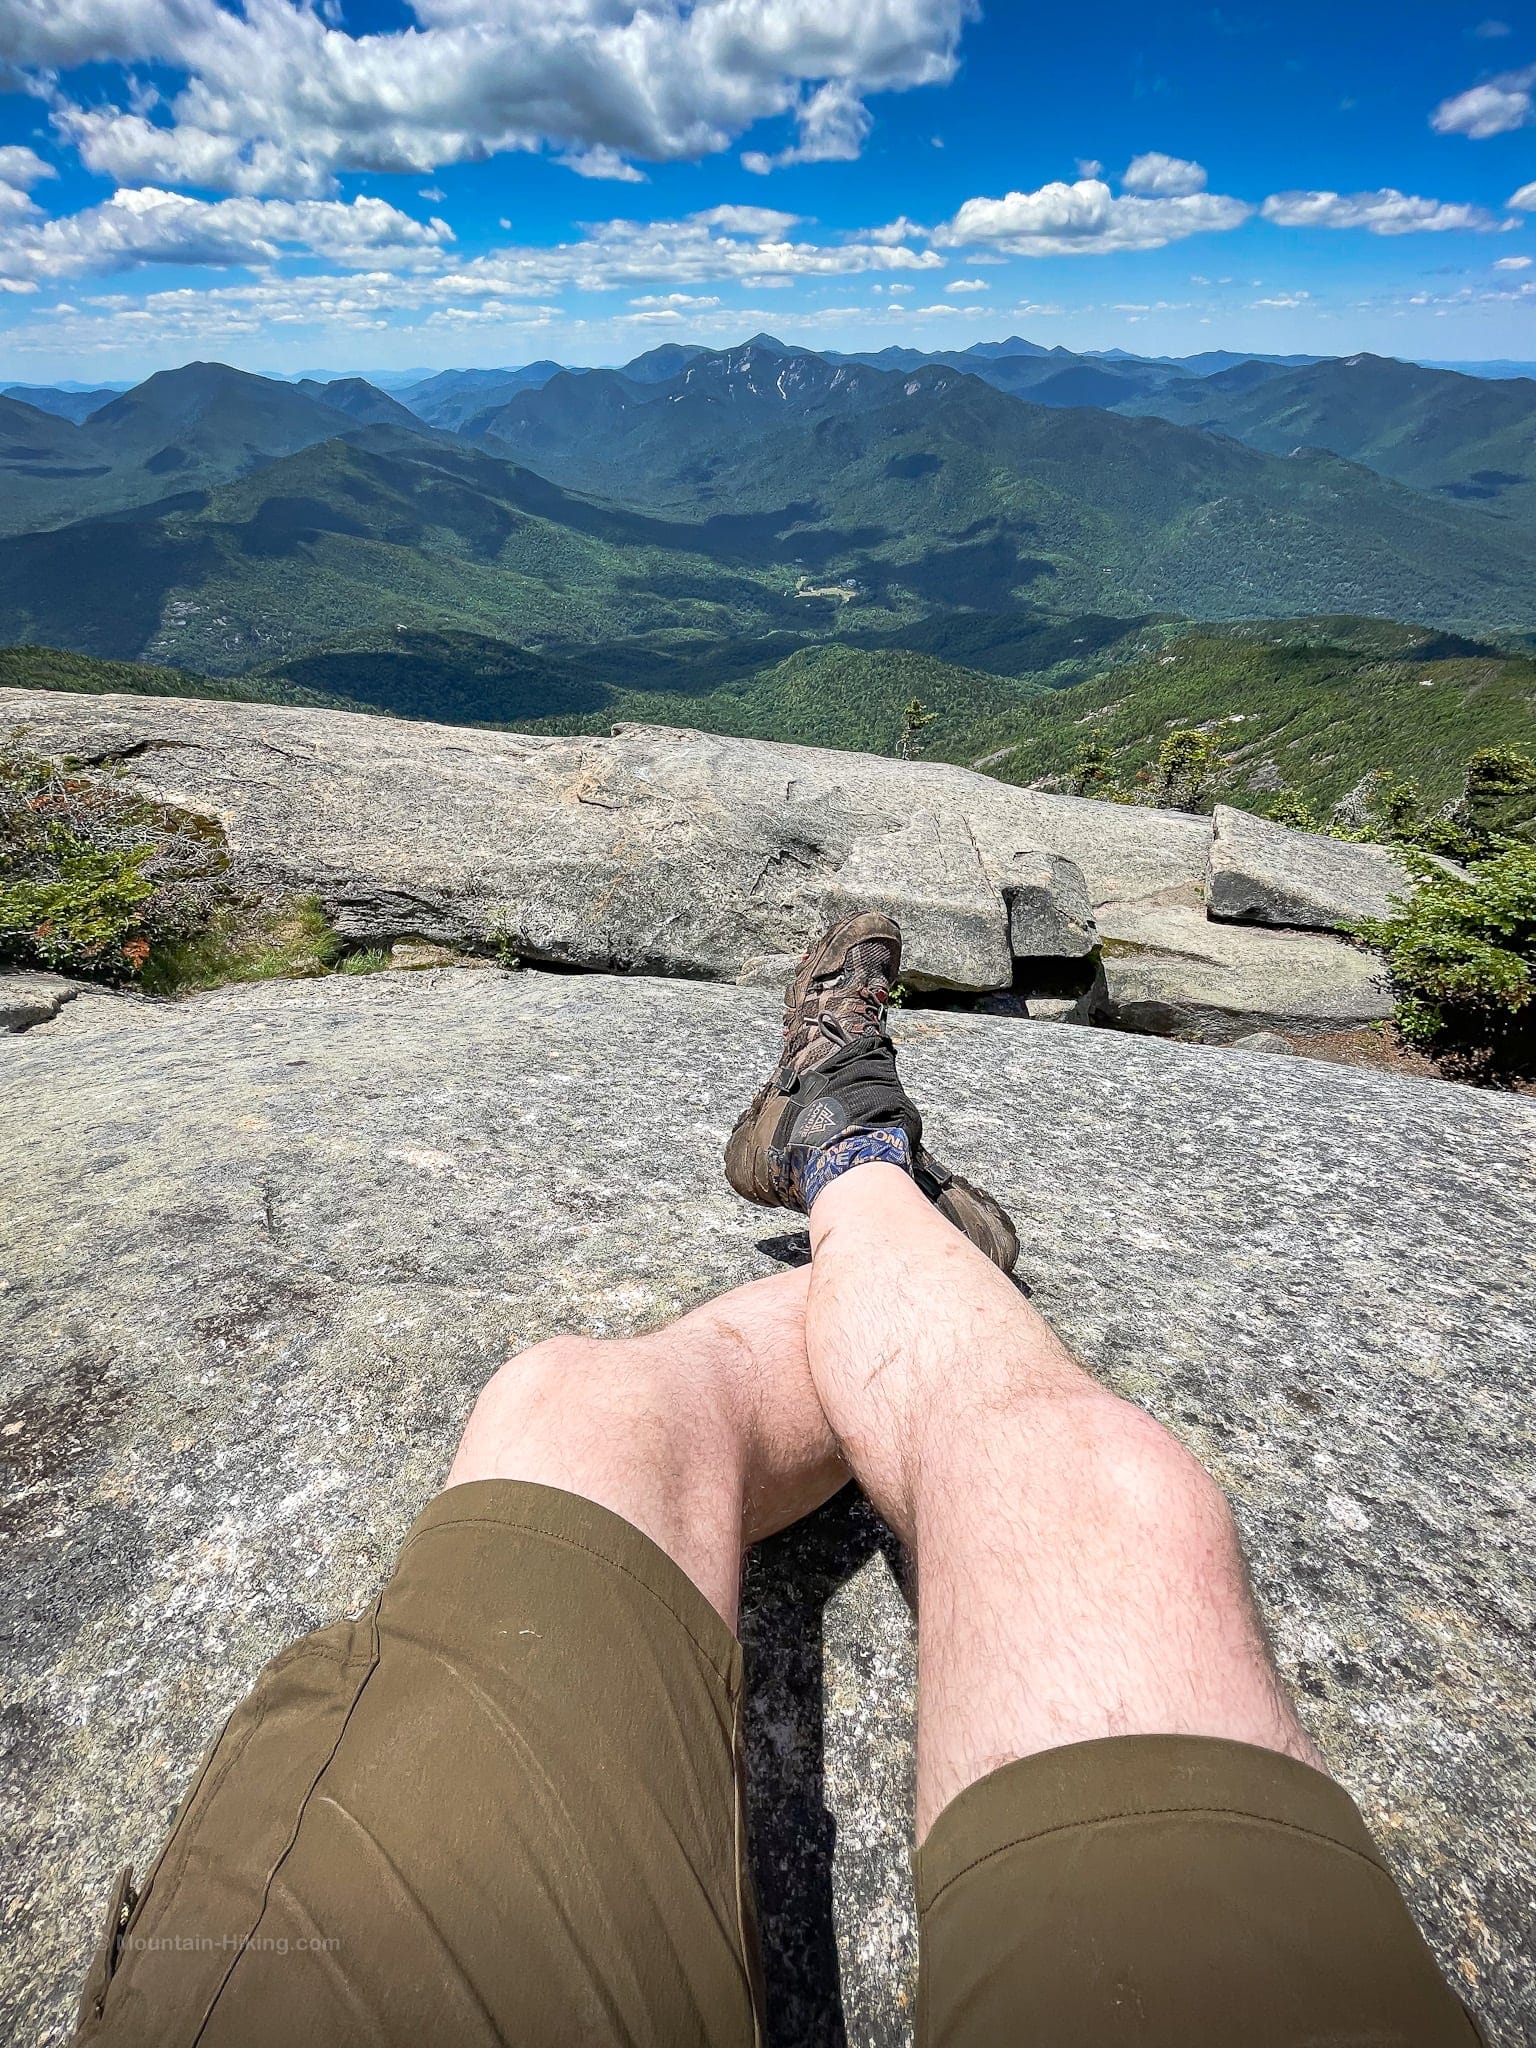 hiking shorts on hiker on mountain summit